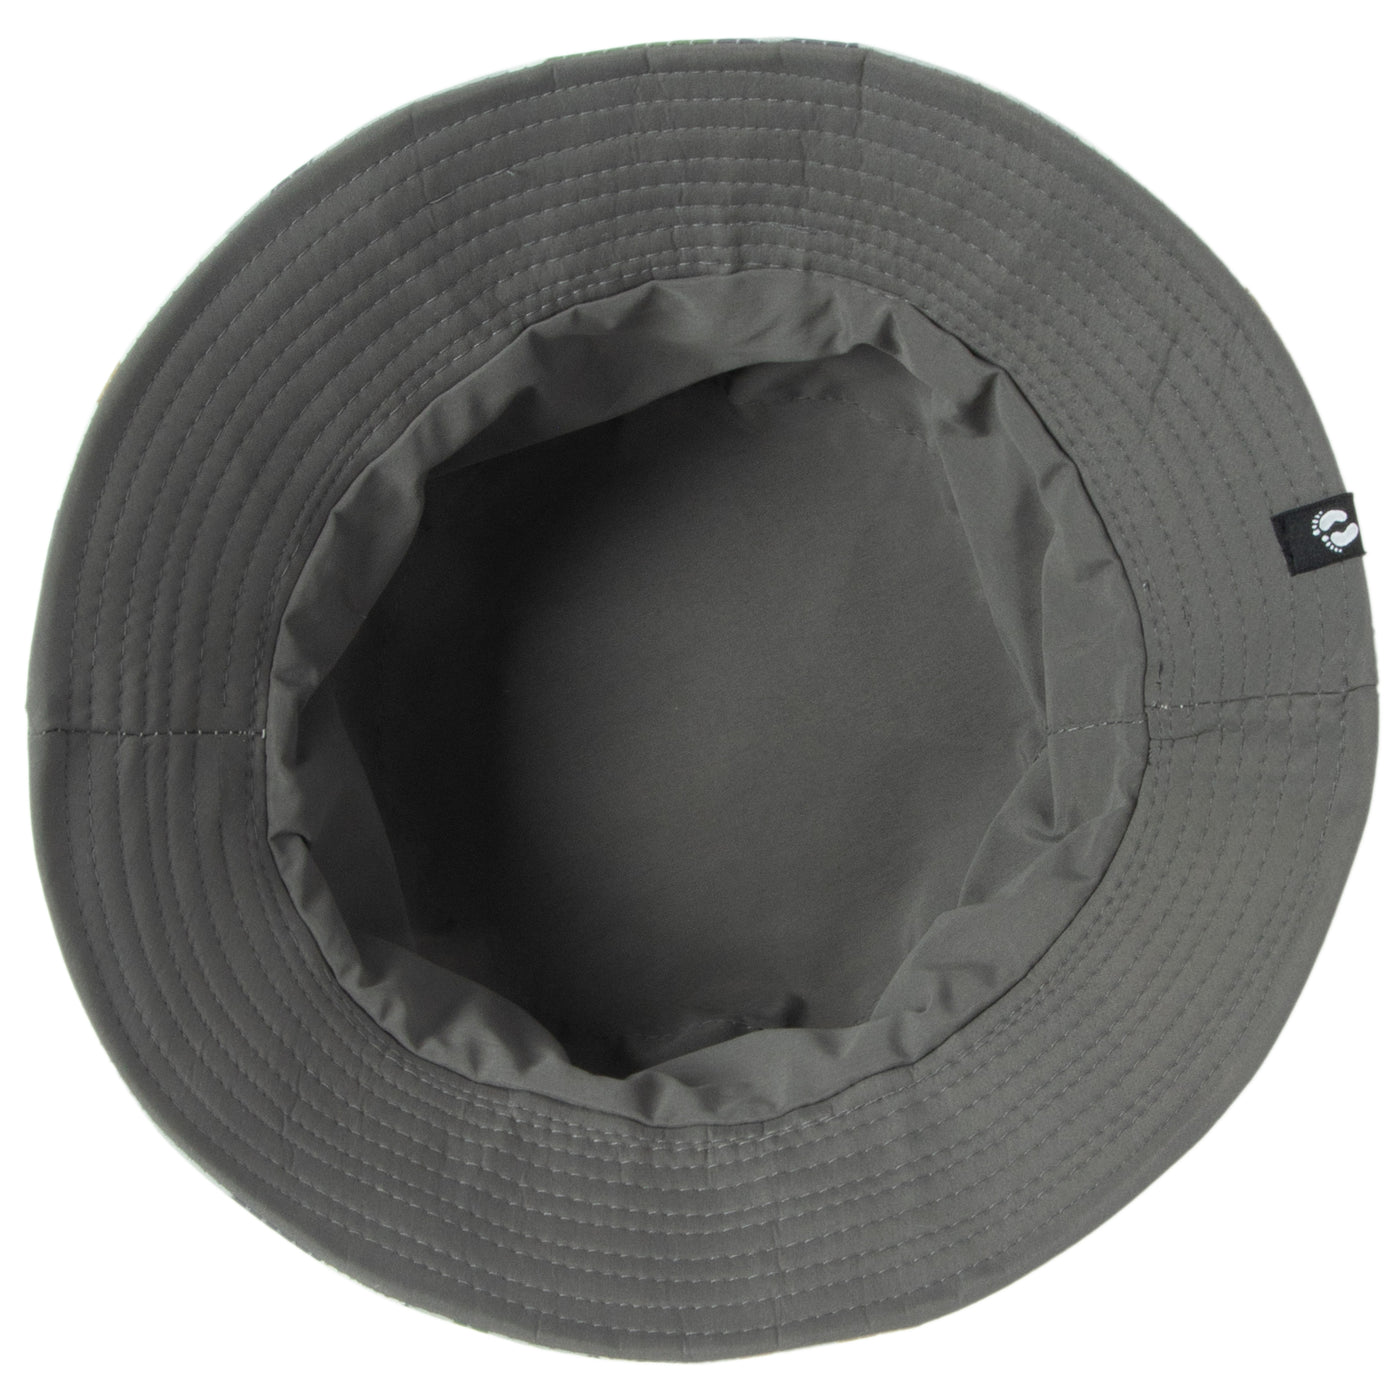 Hang Ten - Reversible Camo Print Bucket Hat-BUCKET-San Diego Hat Company